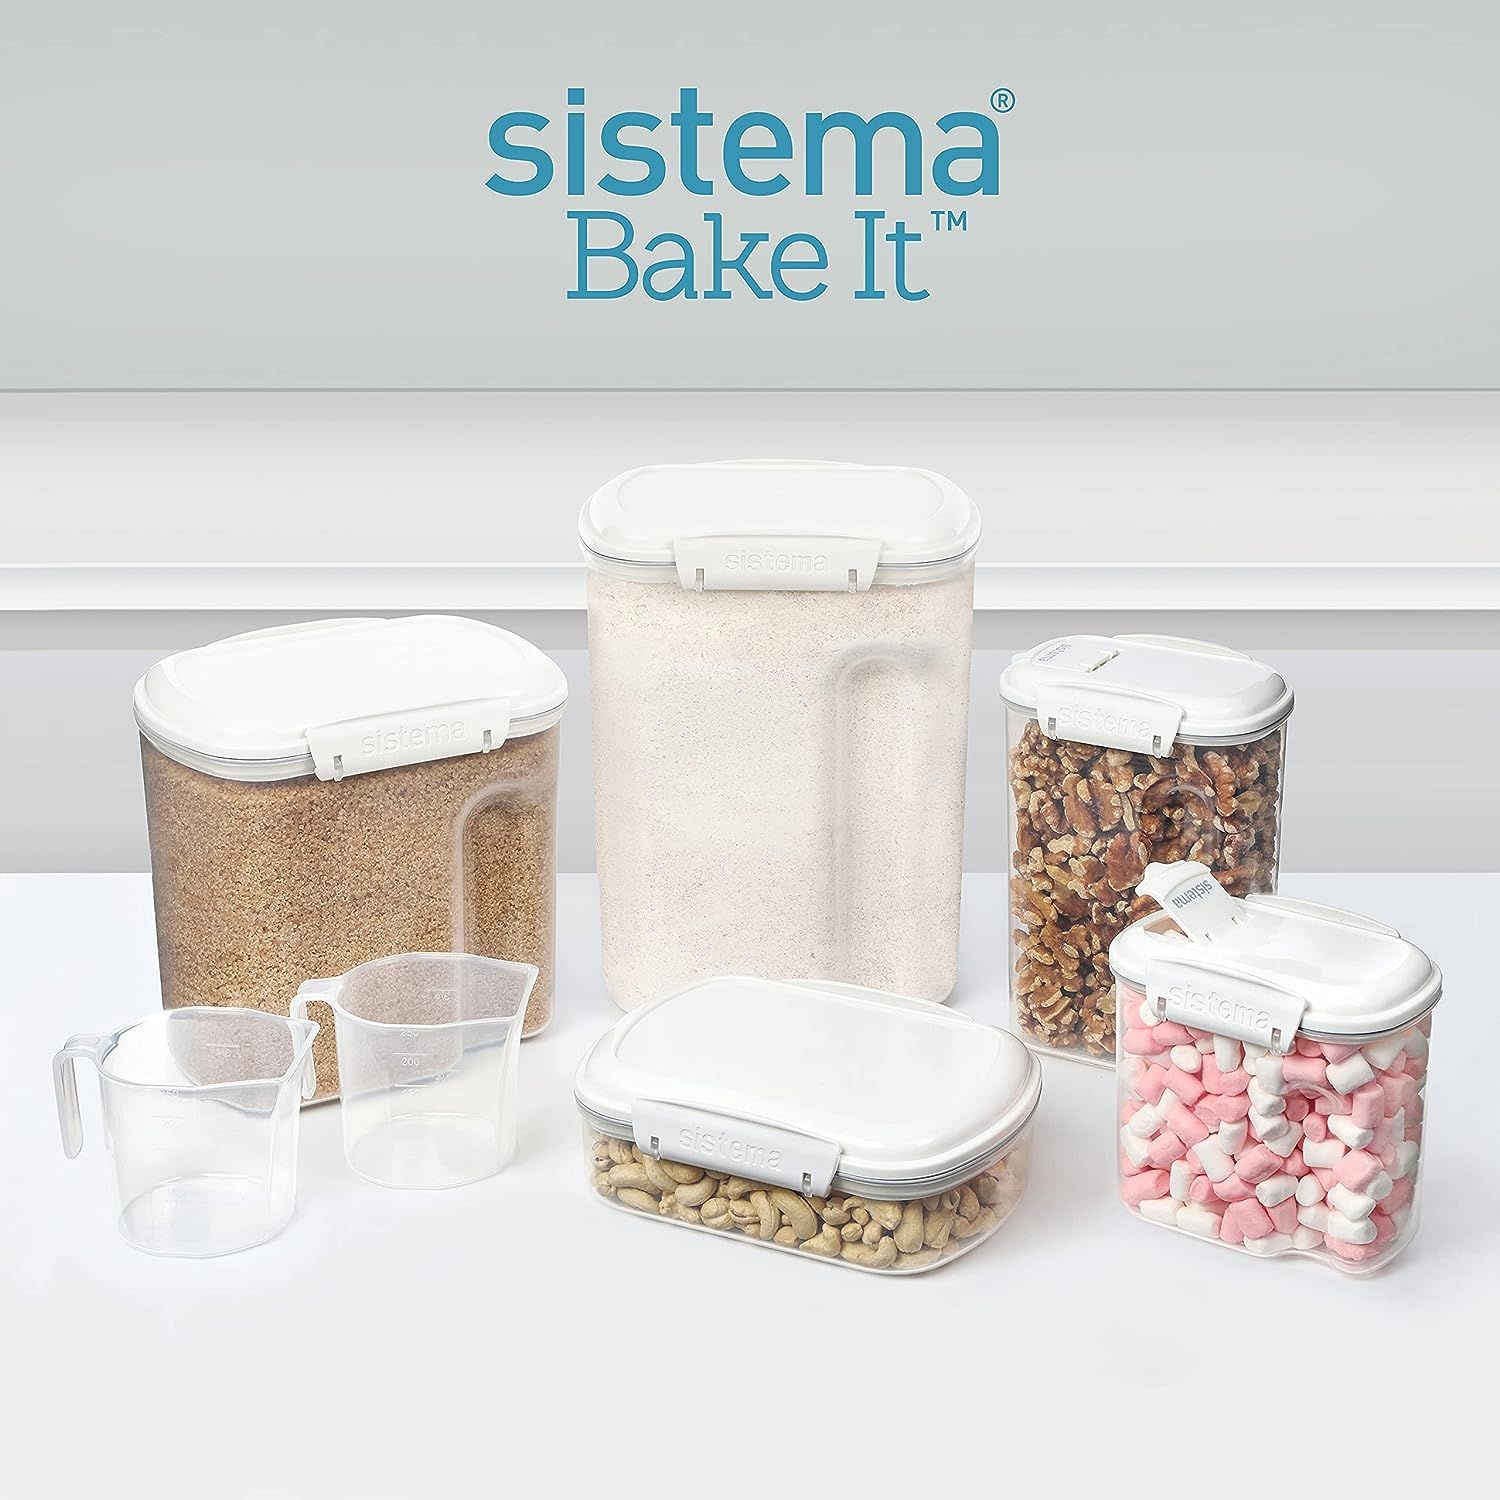 Sistema Bake It Food Storage for Baking Ingredients, Sugar